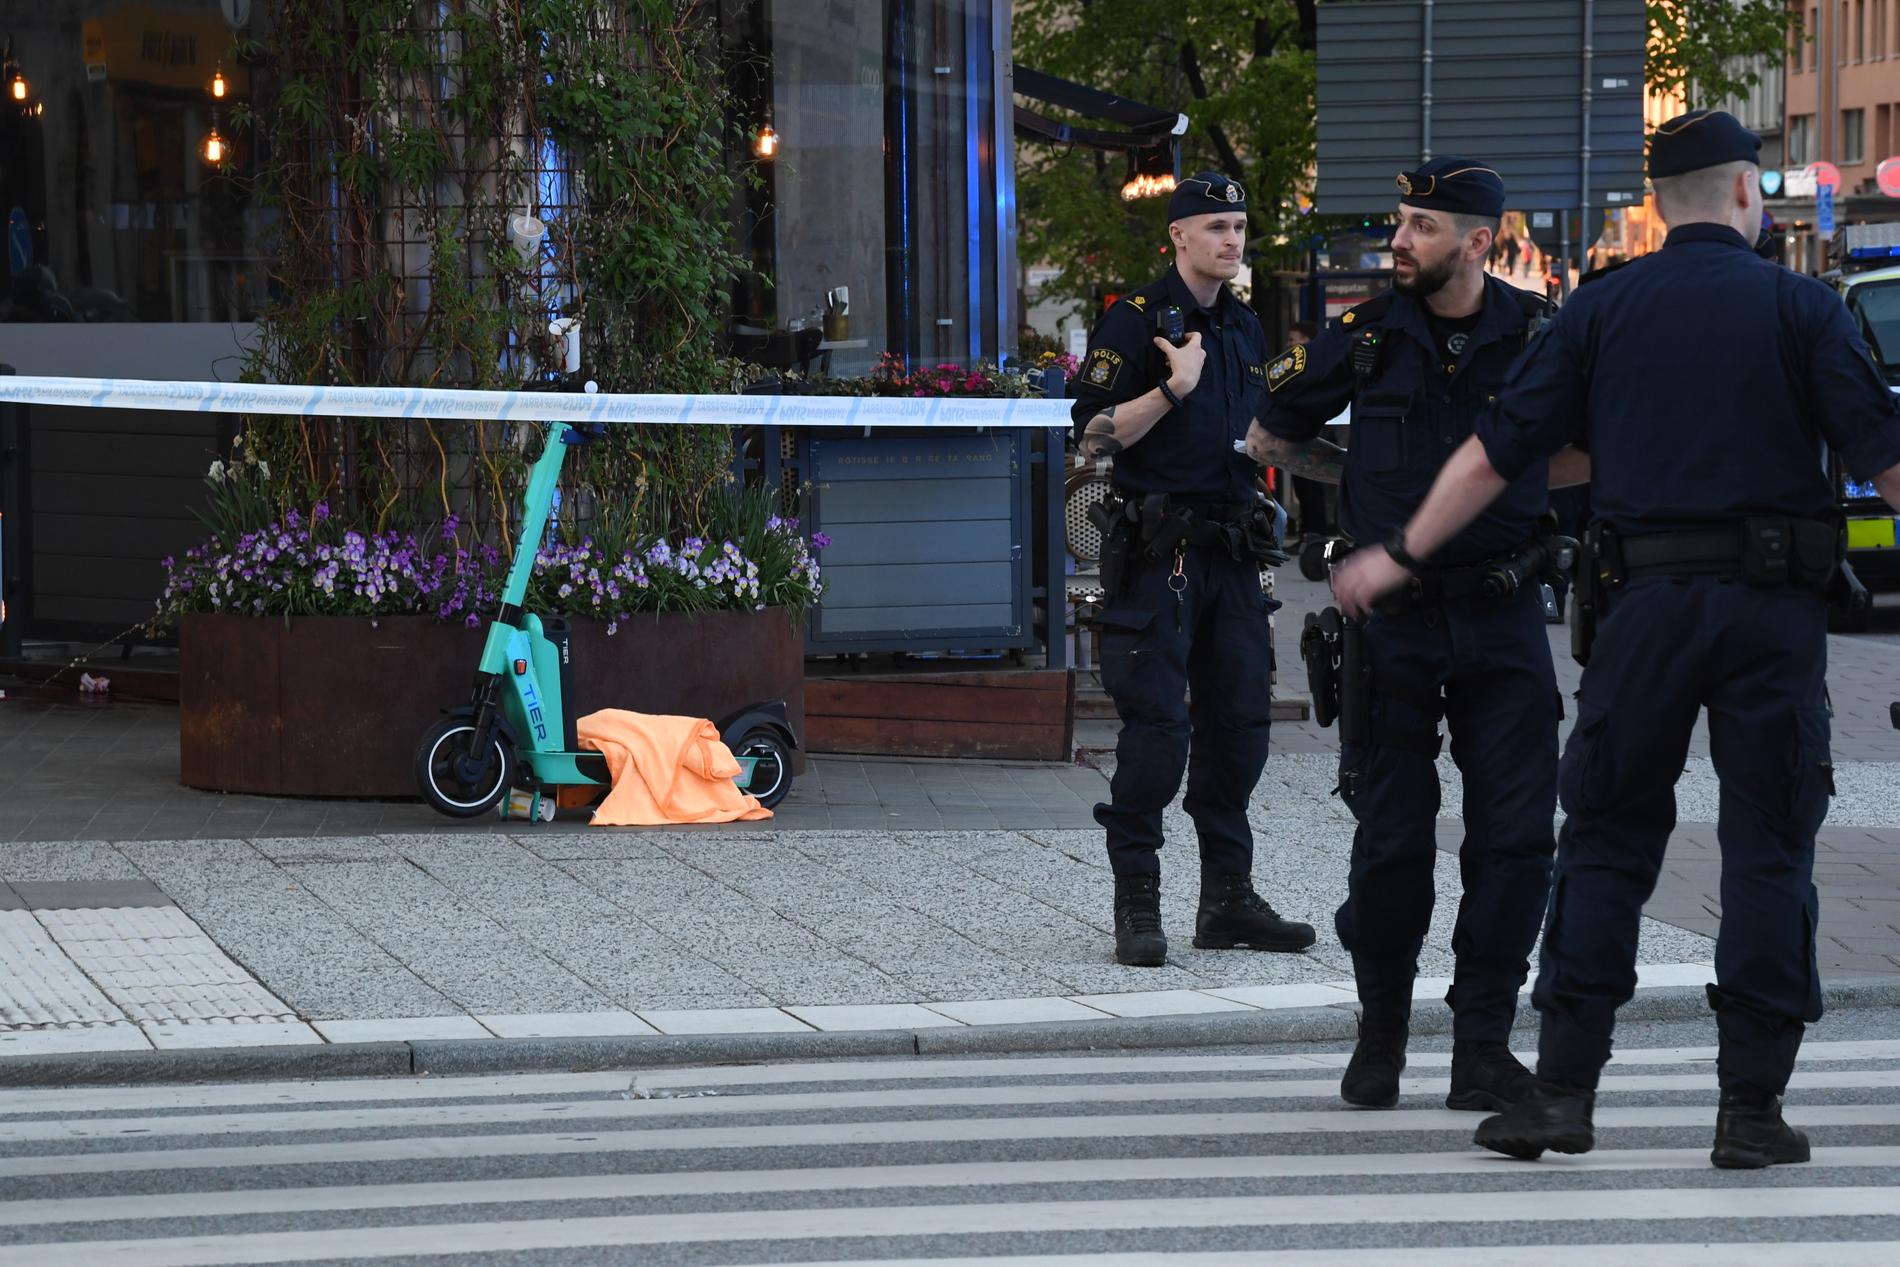 Två personer hittades skadade nära Västermalmsgallerian på Kungsholmen i Stockholm. En av dem har nu avlidit.